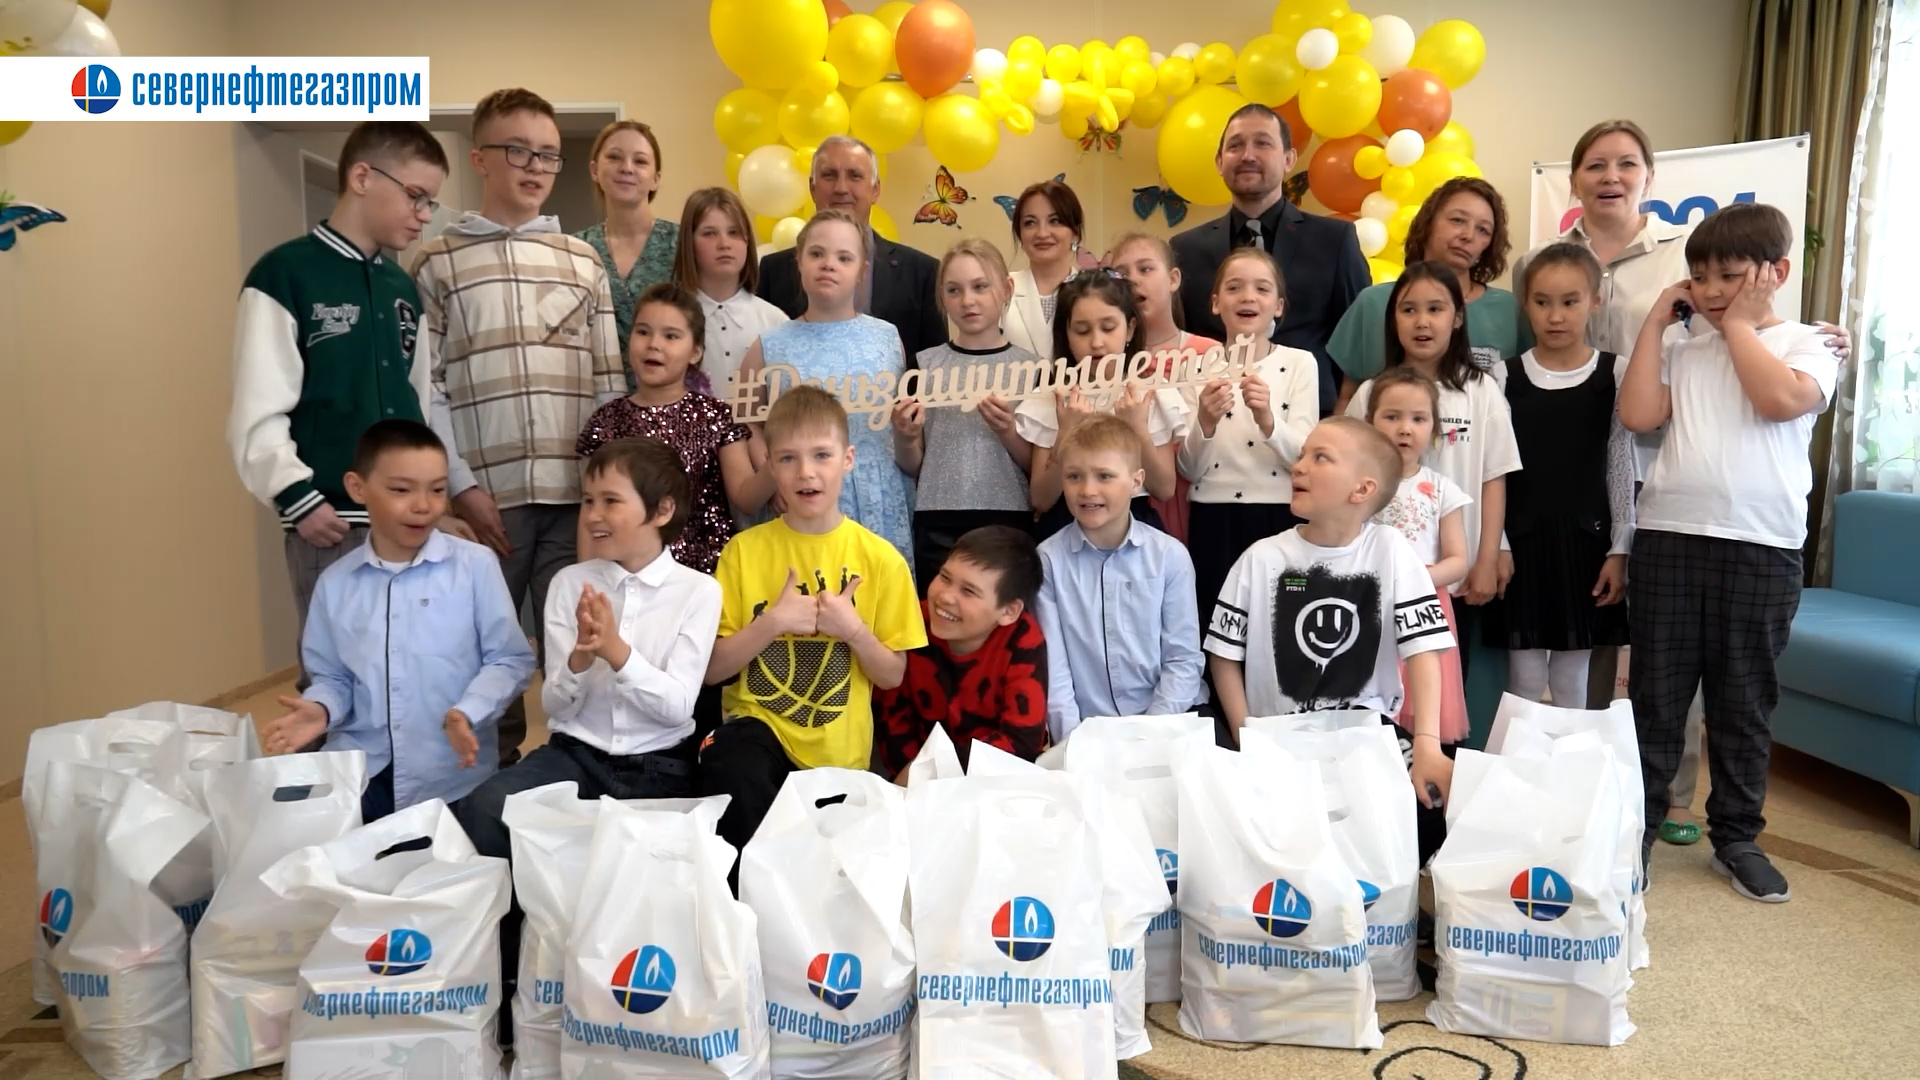 ОАО «Севернефтегазпром» поздравил детей с Днём защиты детей